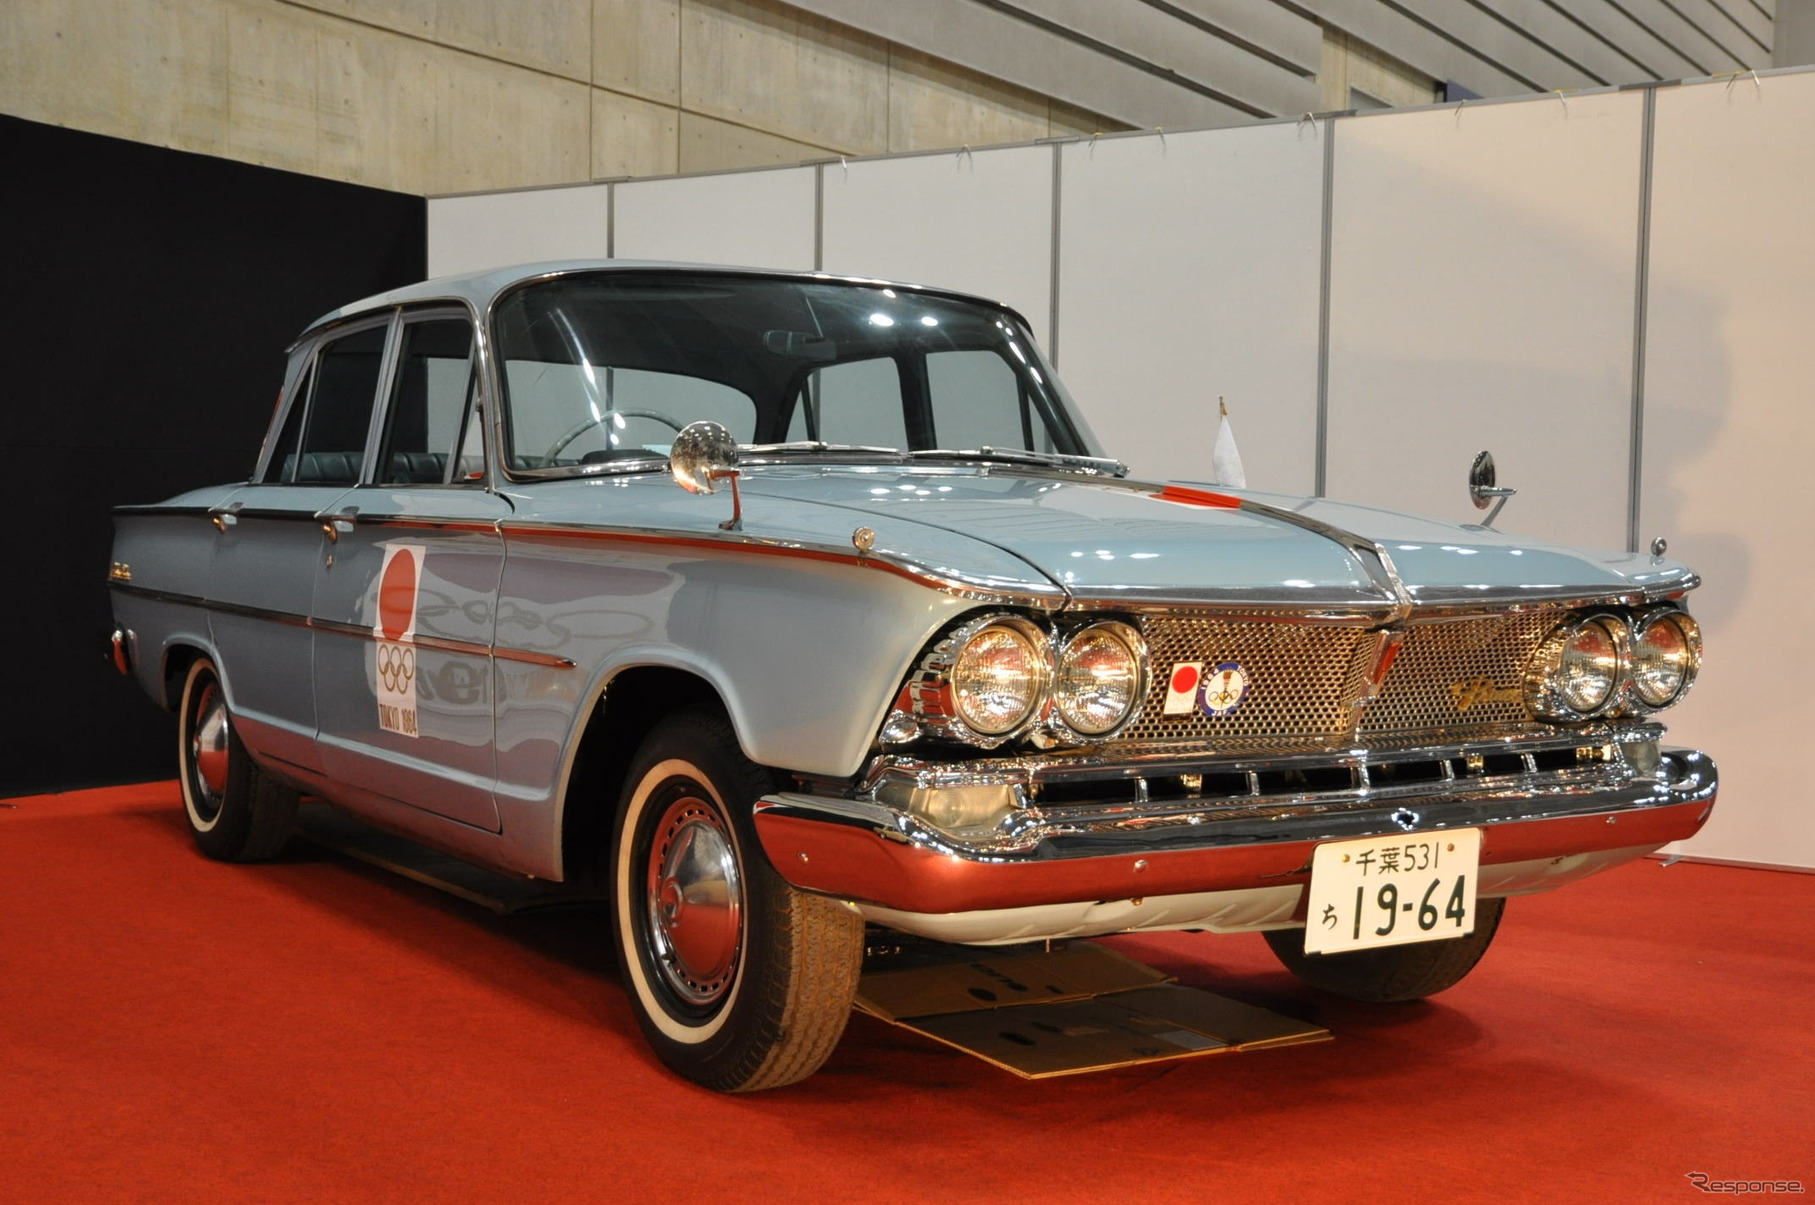 64年式 プリンスグロリアDX 64年東京五輪開催時協賛車